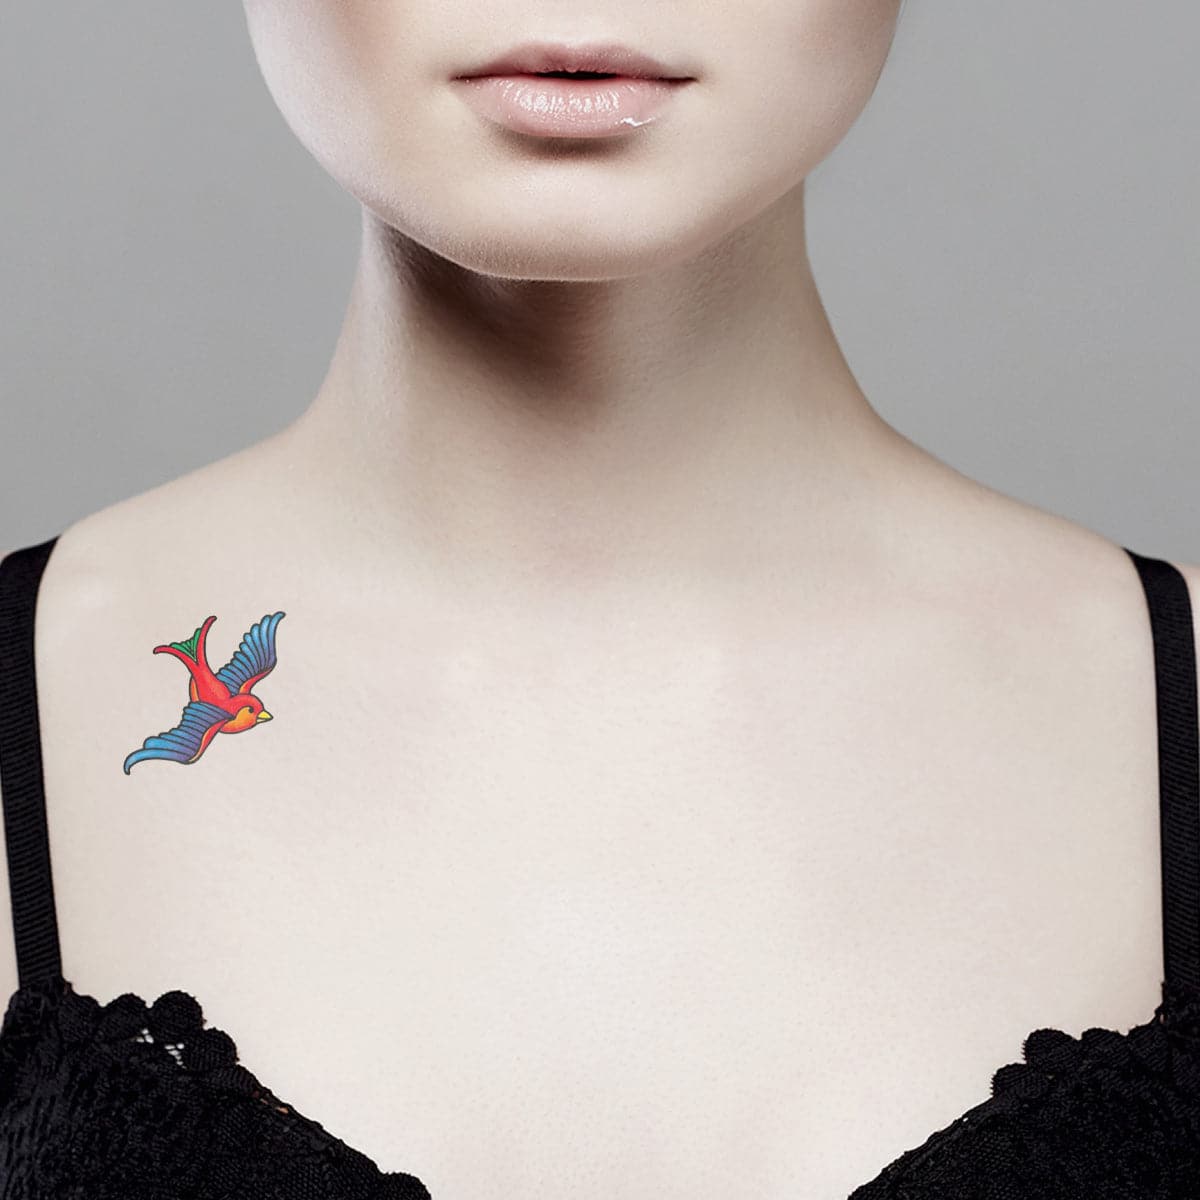 Water Transfer Temporary Tattoo Sticker Swallow Bird 3D Realistic Cute  Animal Tatoo Woman Man Child Kid Arm Body Art Fake Tatto - AliExpress